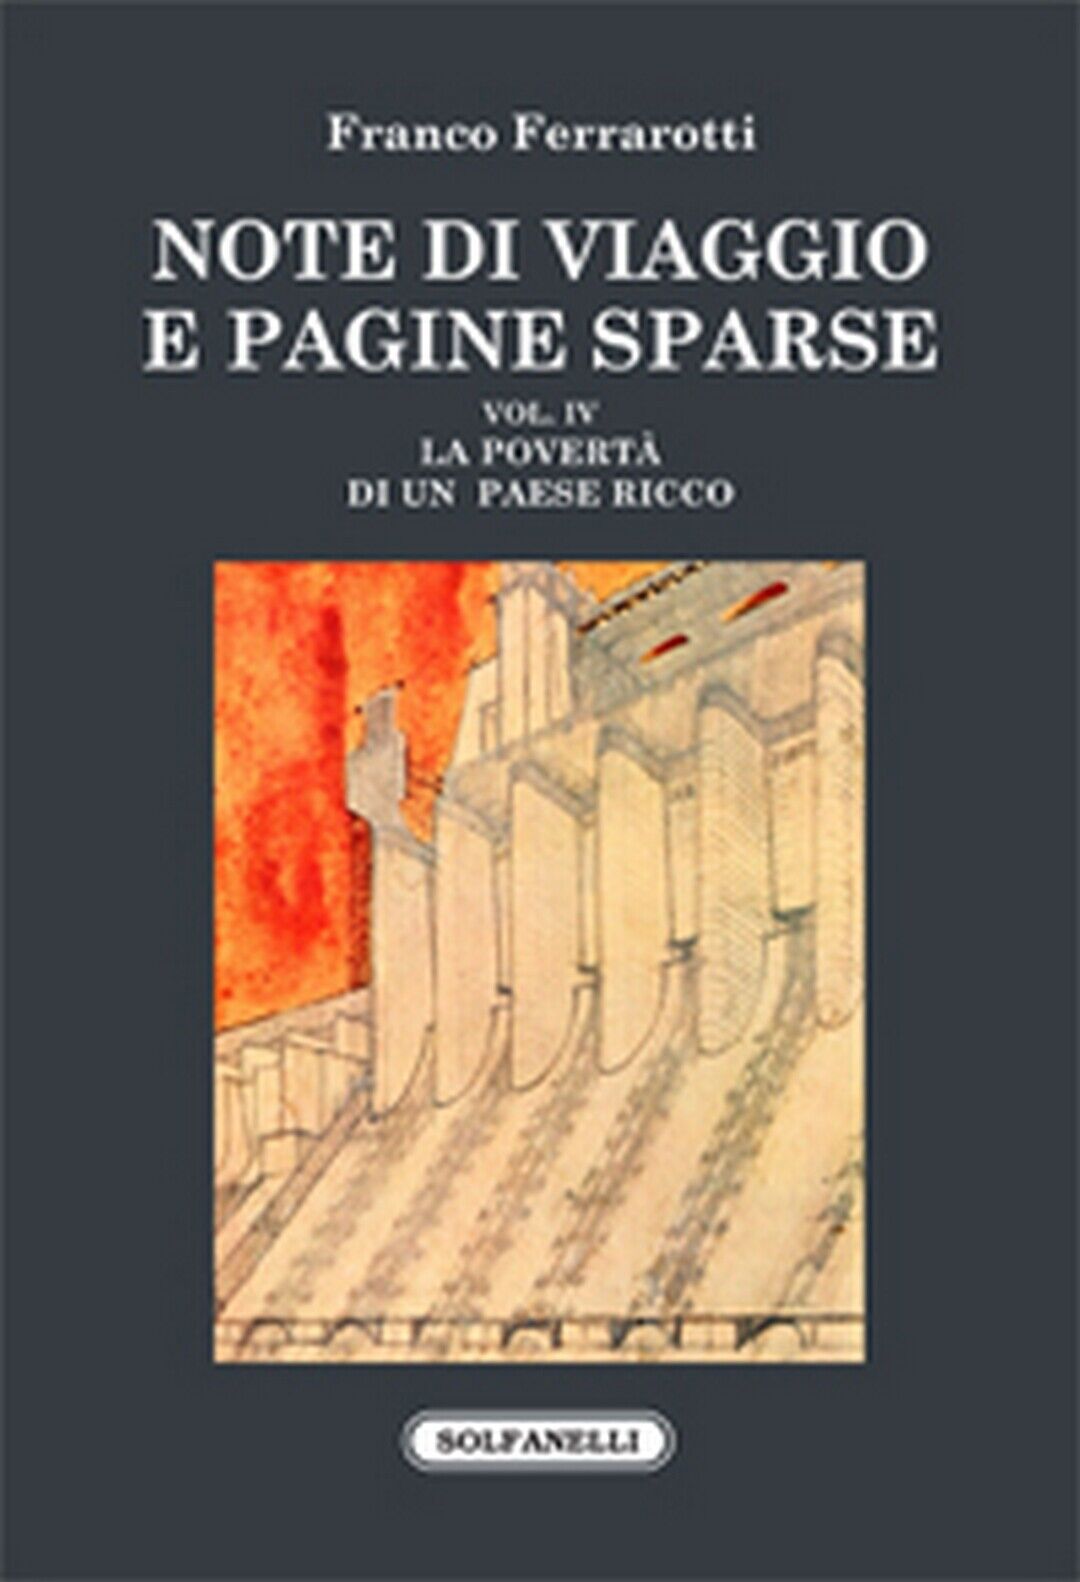 NOTE DI VIAGGIO E PAGINE SPARSE Vol. IV  di Franco Ferrarotti,  Solfanelli Ediz. libro usato